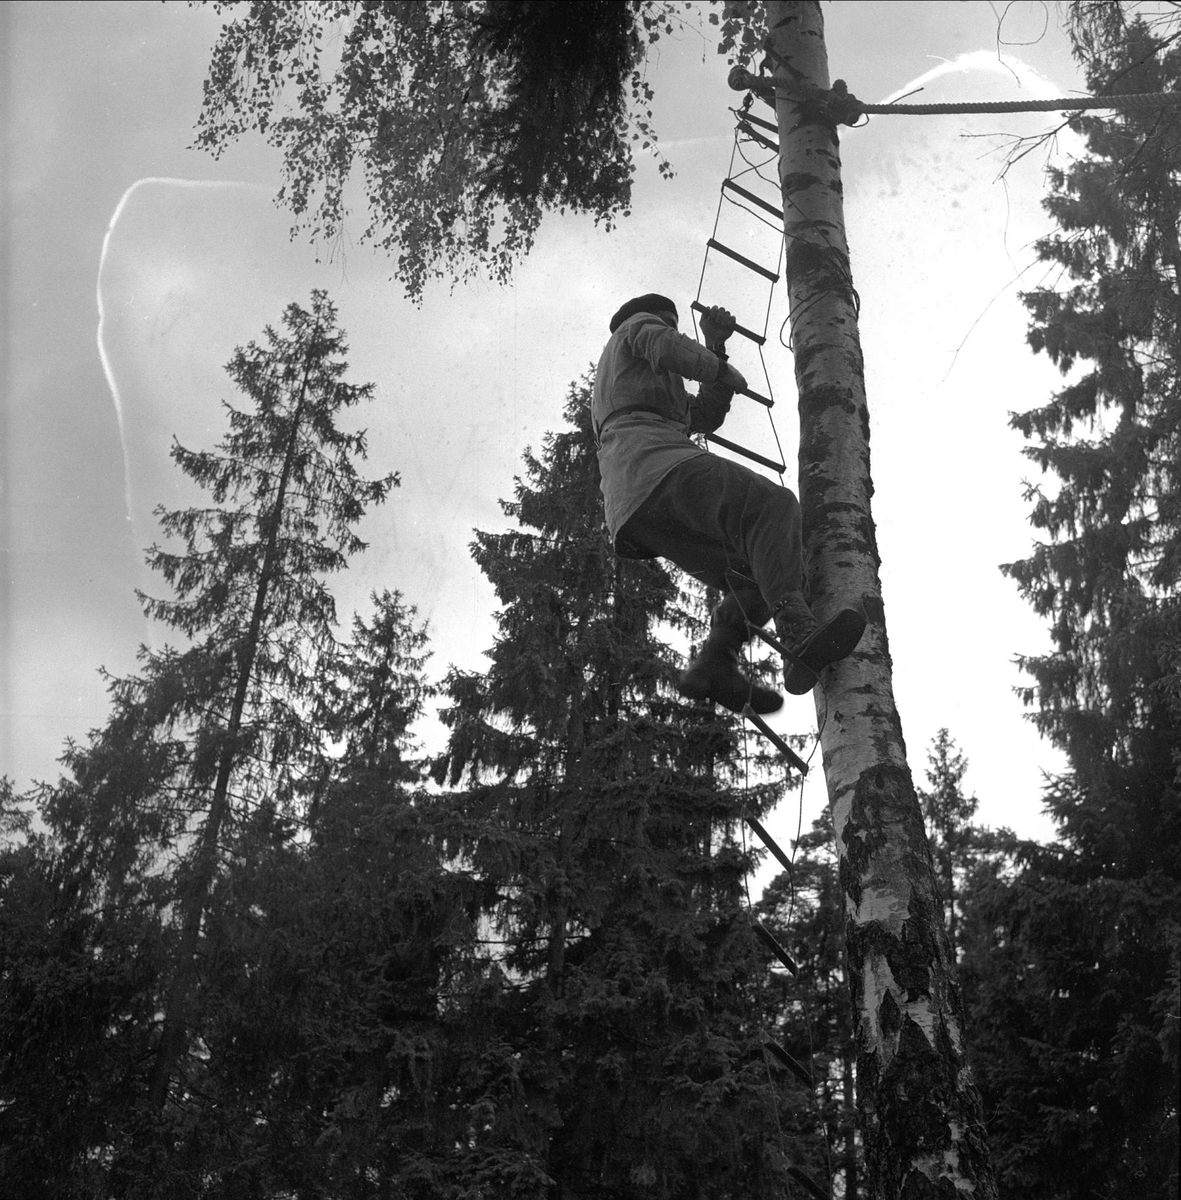 Politistudent klatrer i taustige. Oslo før 1954. Politiskolens trening i Gaustadskogen.